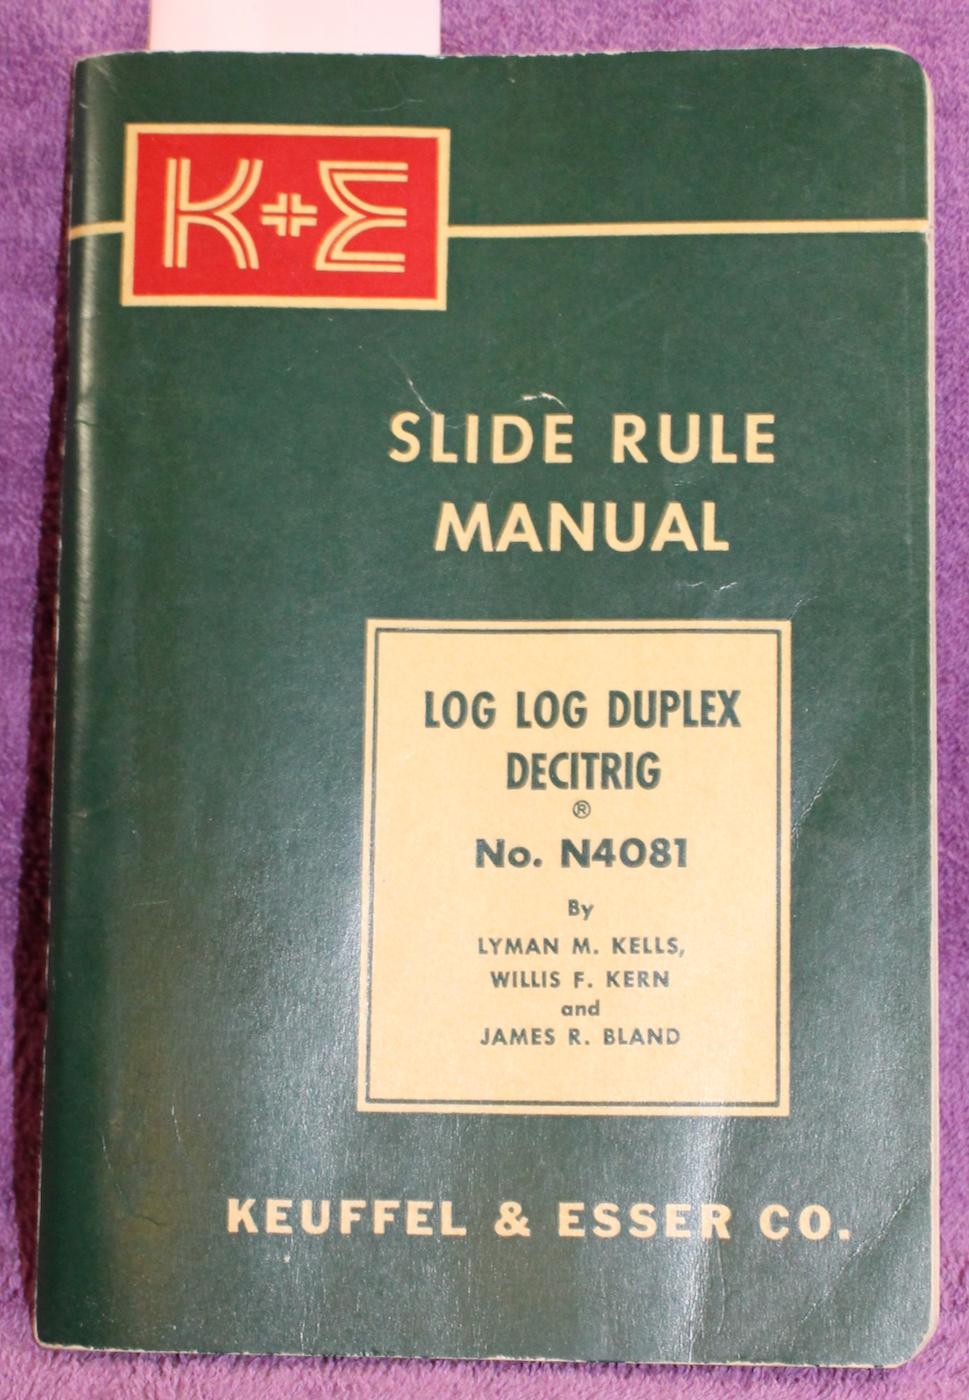 K&e Slide Rule User Manual